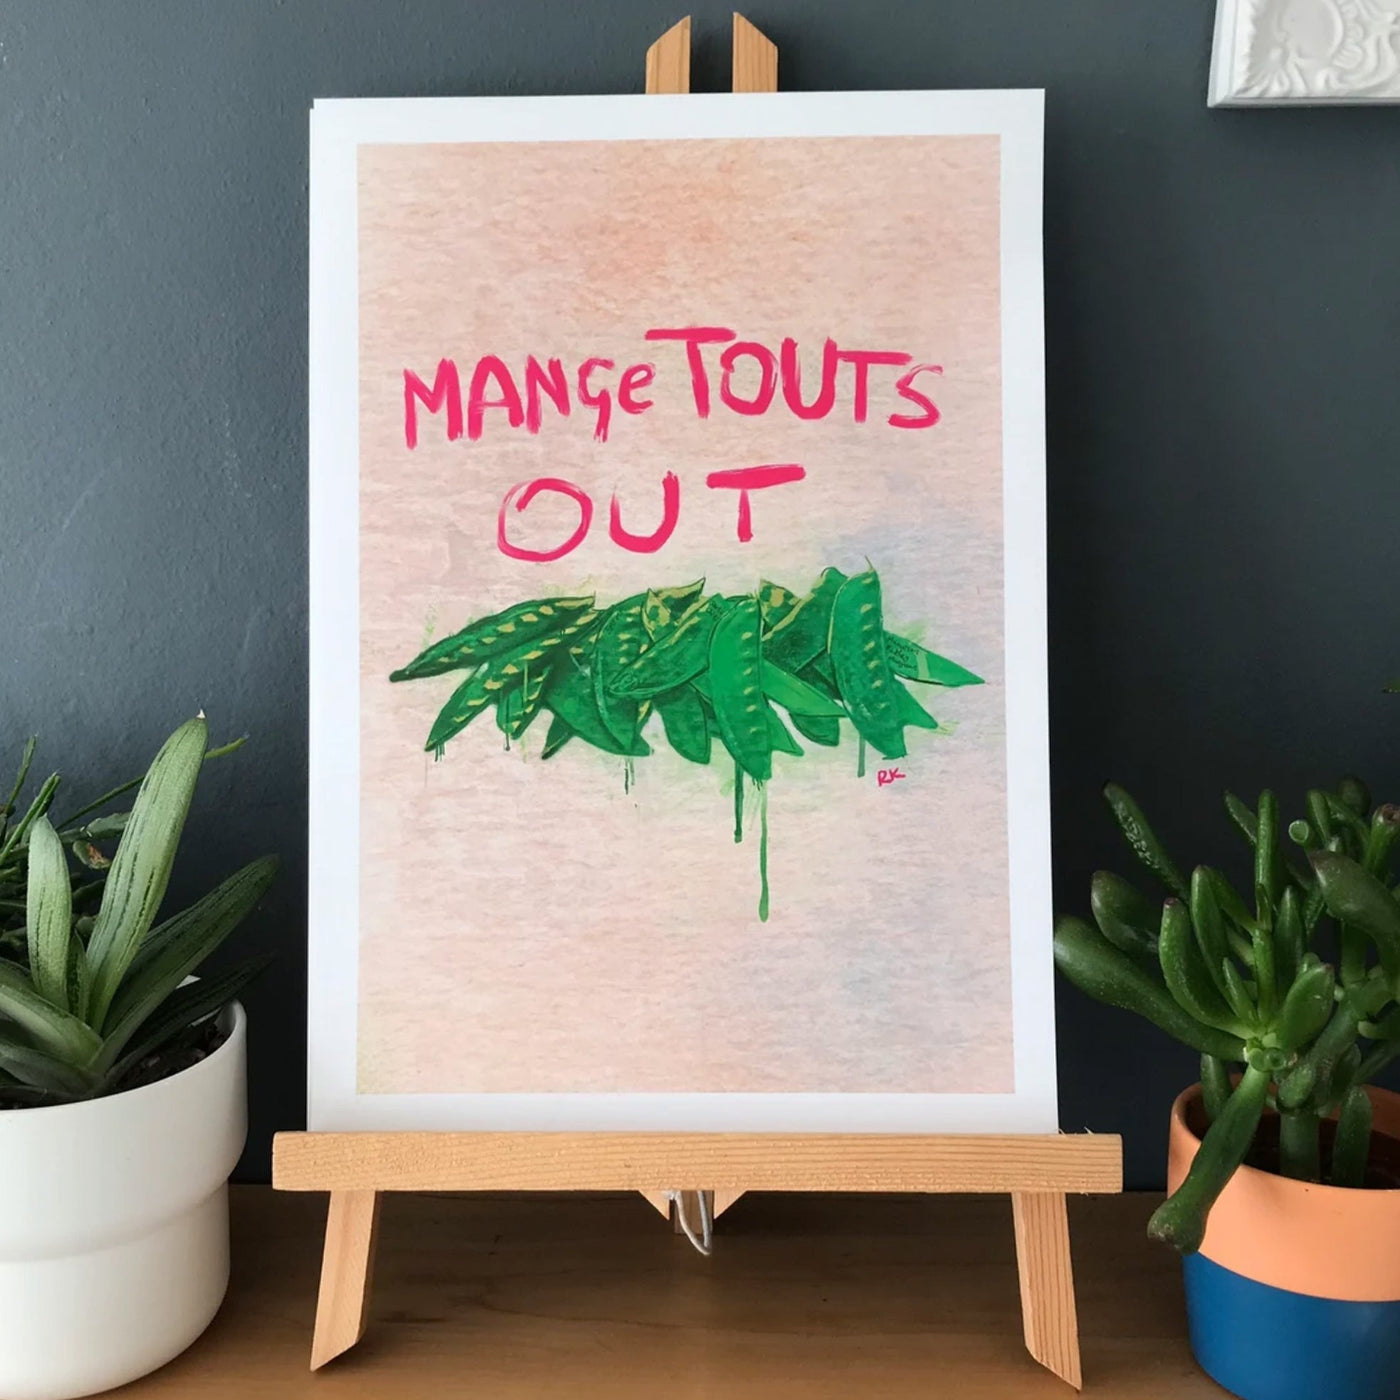 MangeTouts Out | Print